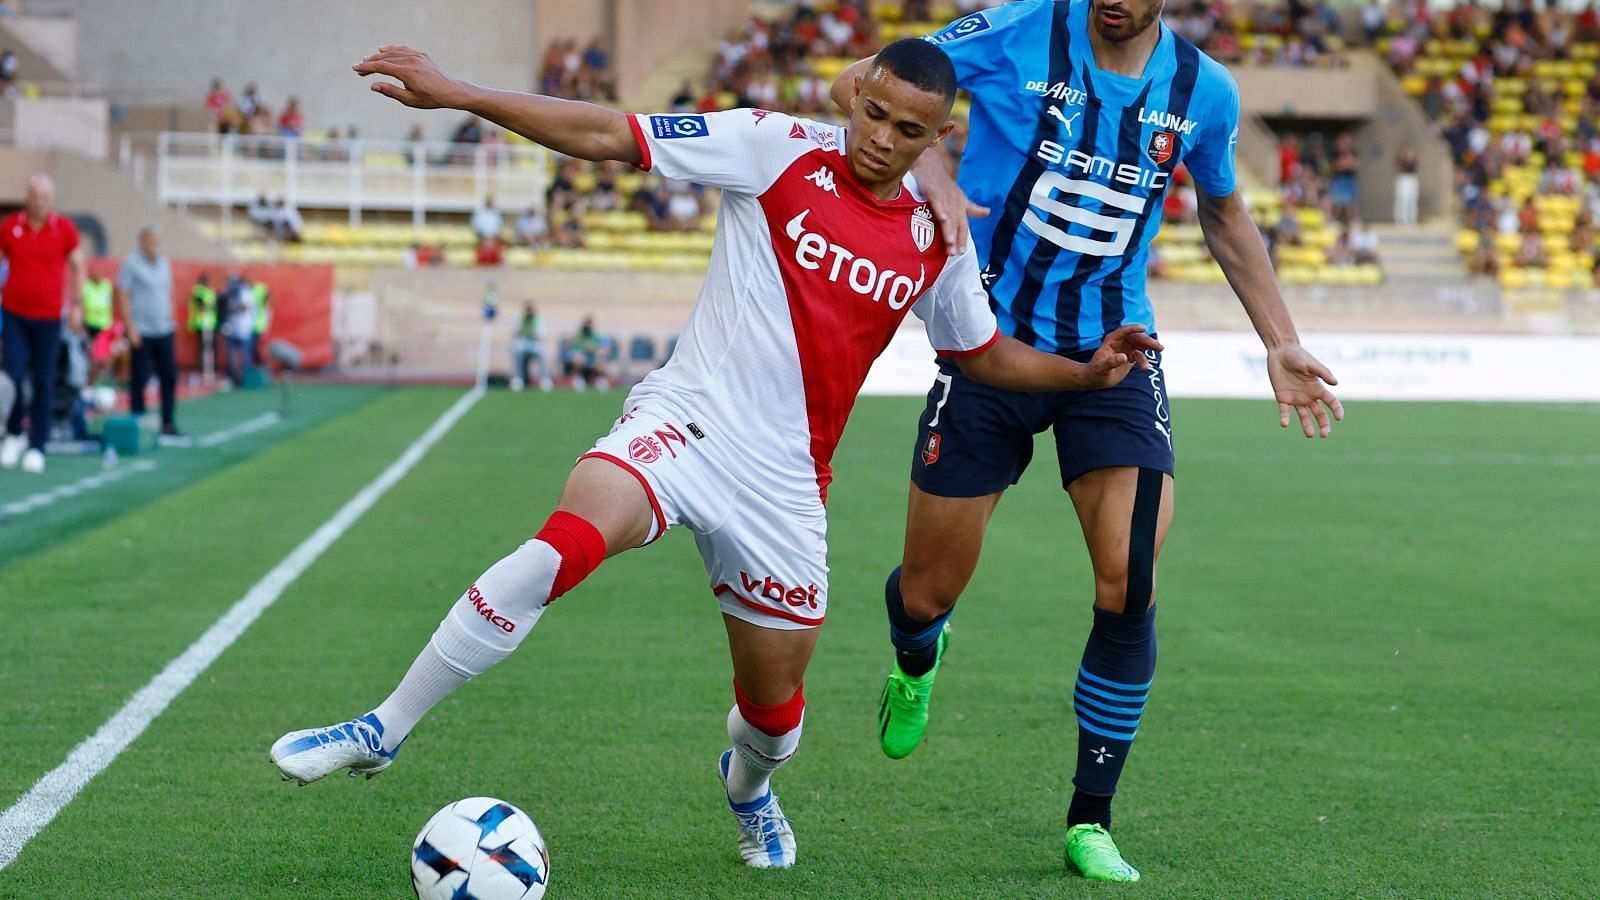 Vanderson in action for AS Monaco